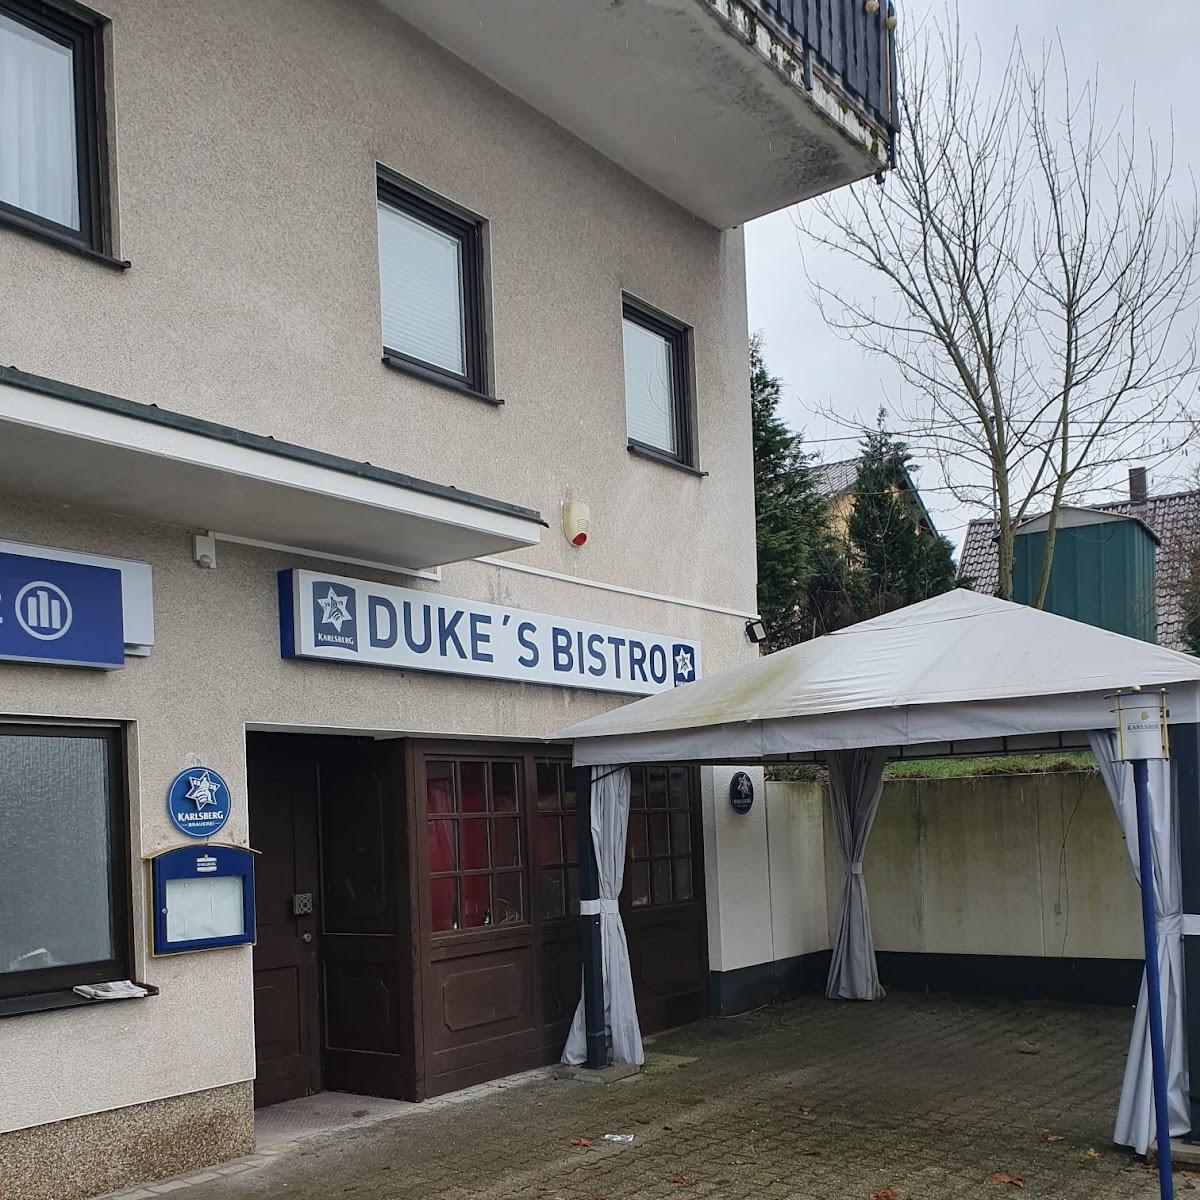 Restaurant "Duke‘s Bistro-" in Schiffweiler